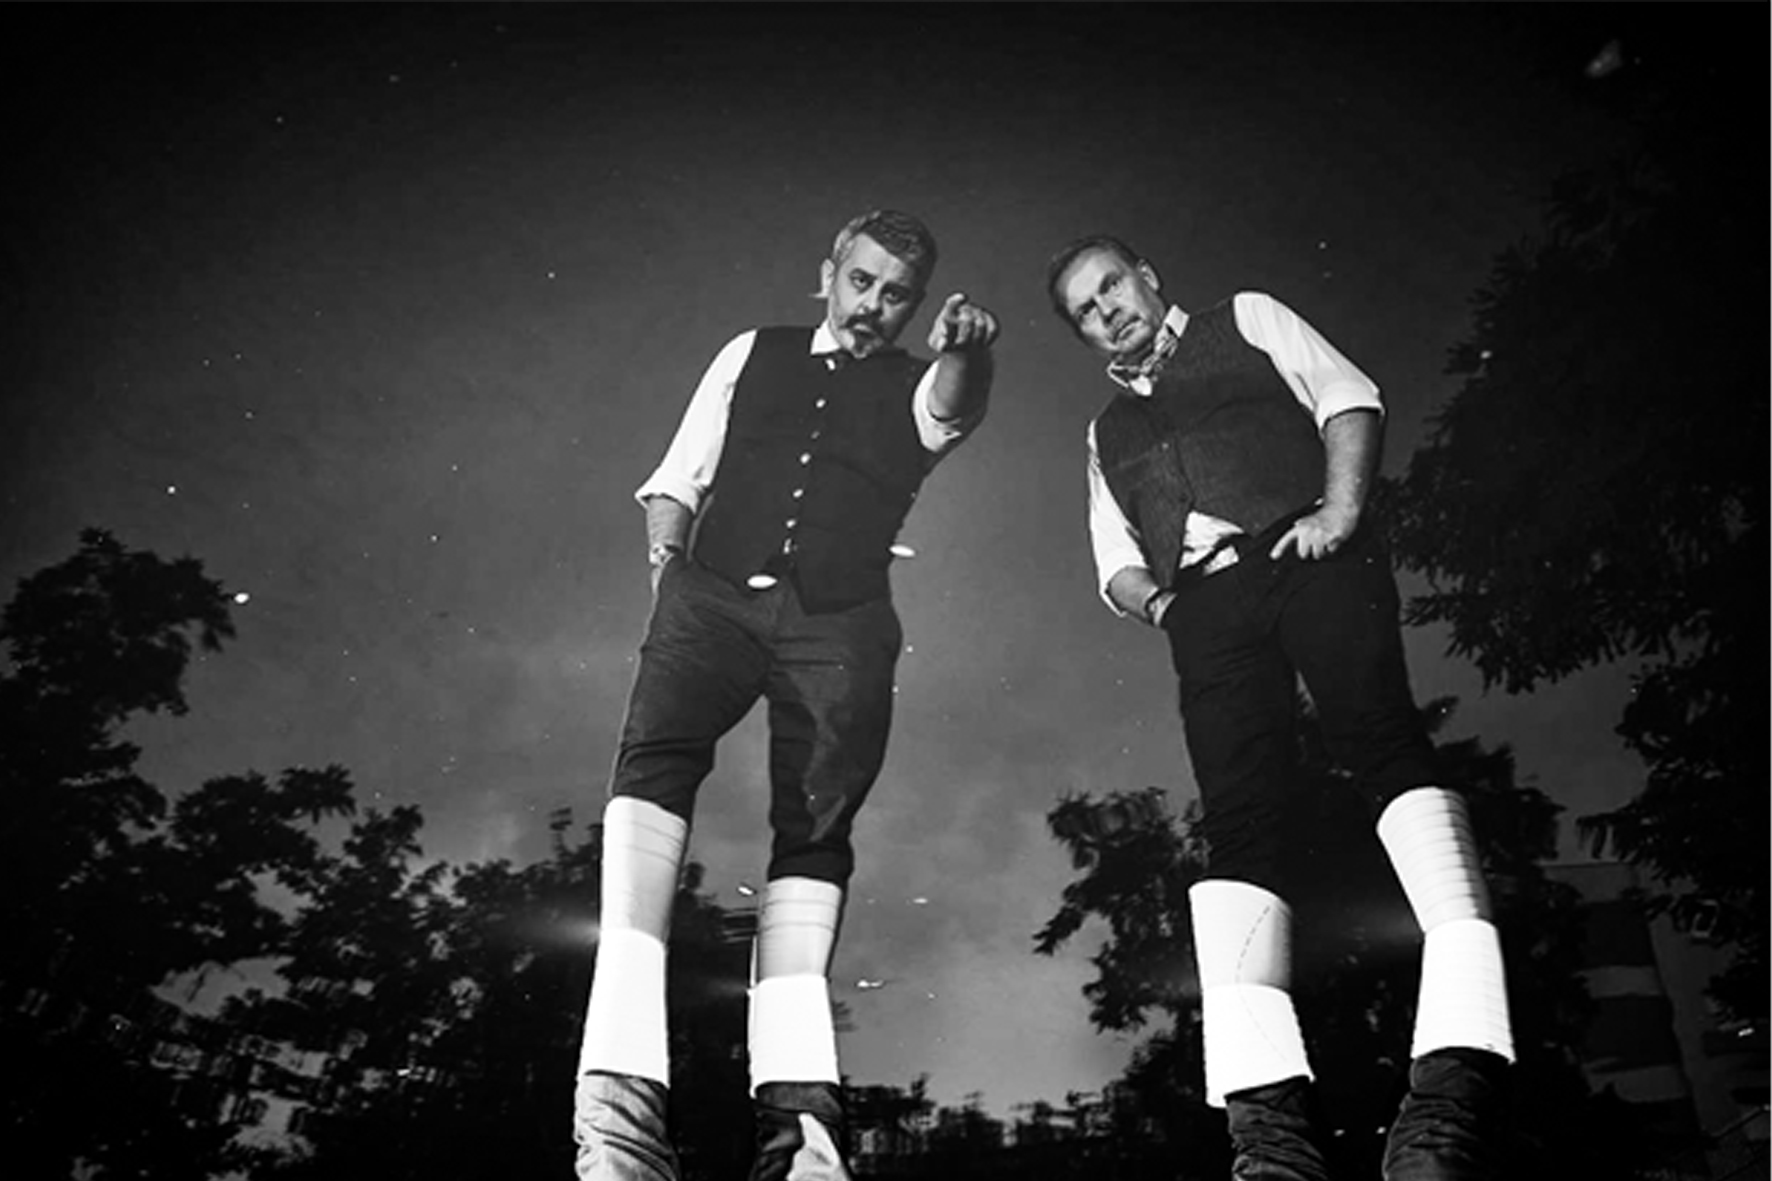 zdjęcie czarno-białe; dwóch mężczyzn w białych podkolanówkach, czarnych spodniach do kolan, białych koszulach i czarnych kamizelkach stoją na tle koron drzew. Jeden z nich wskazuje przed siebie palcem